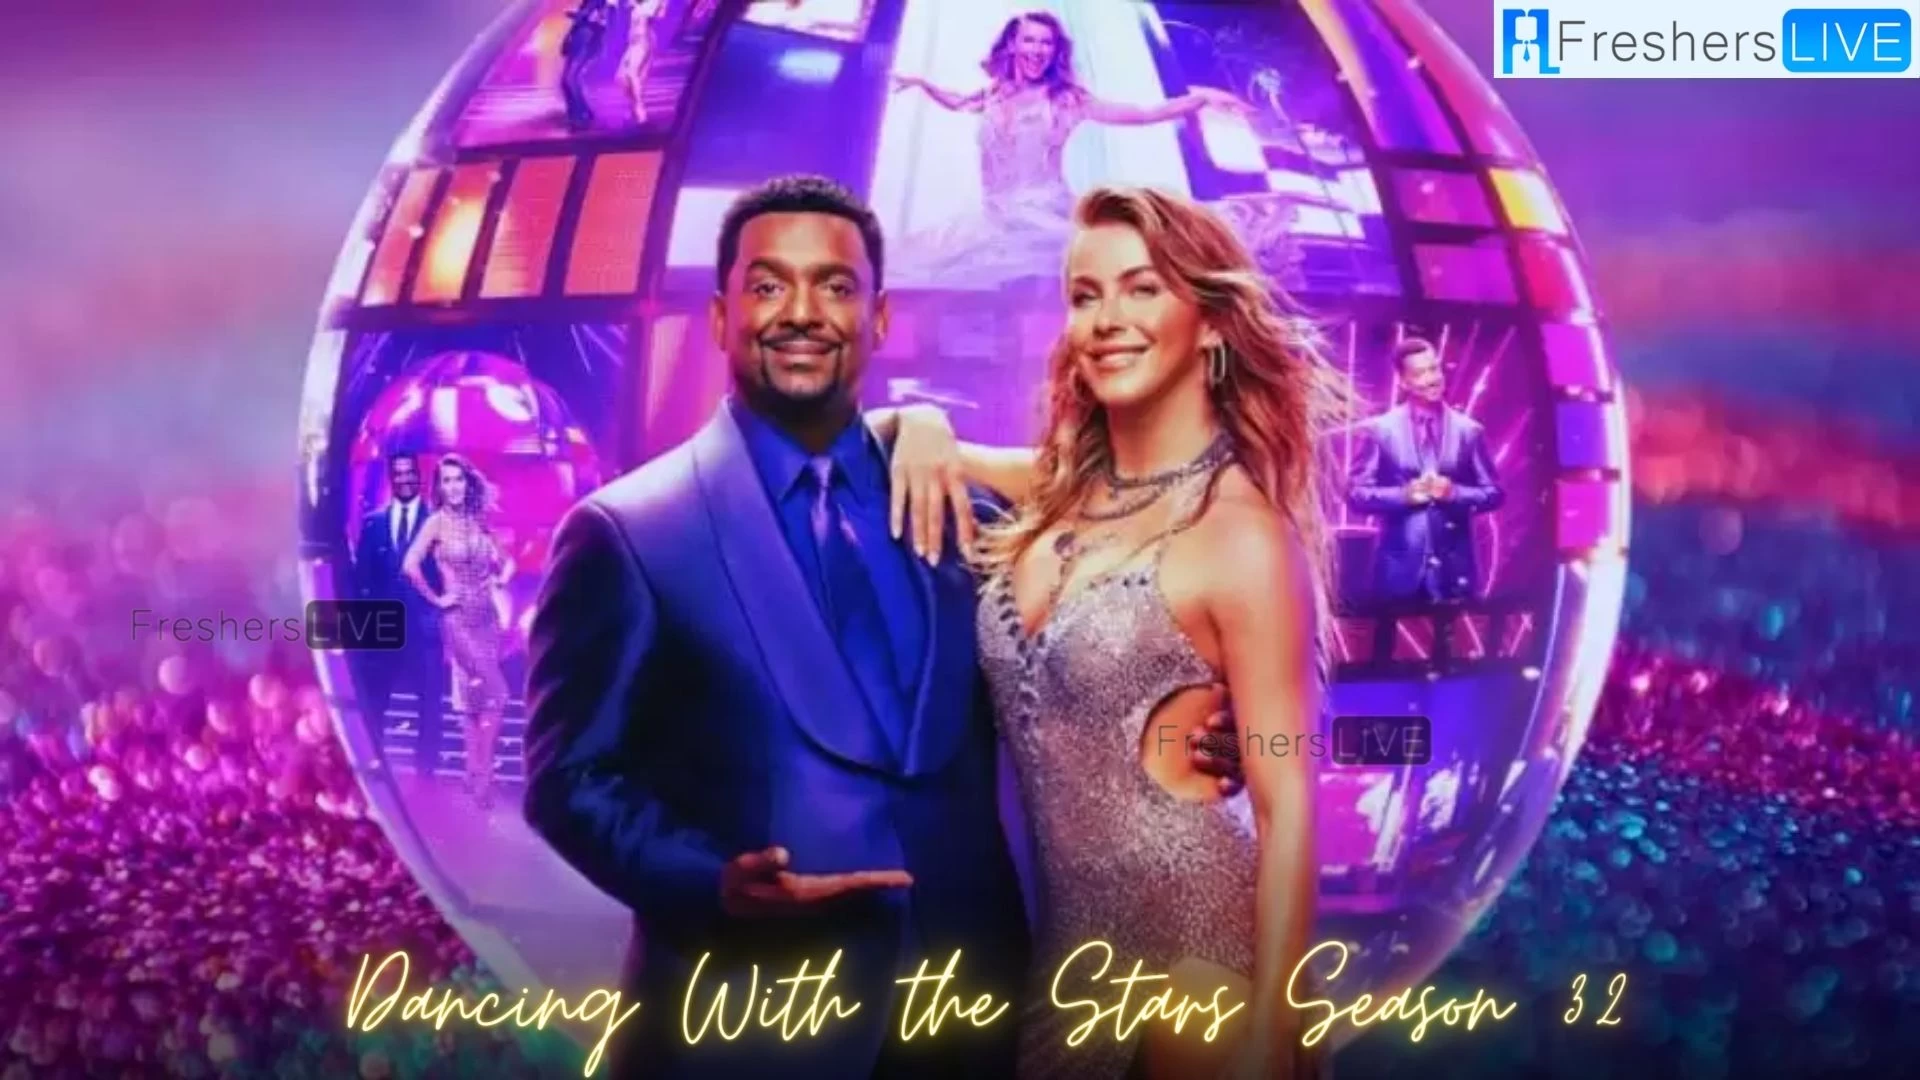 ¿Cómo ver la temporada 32 de Dancing With The Stars sin cable?